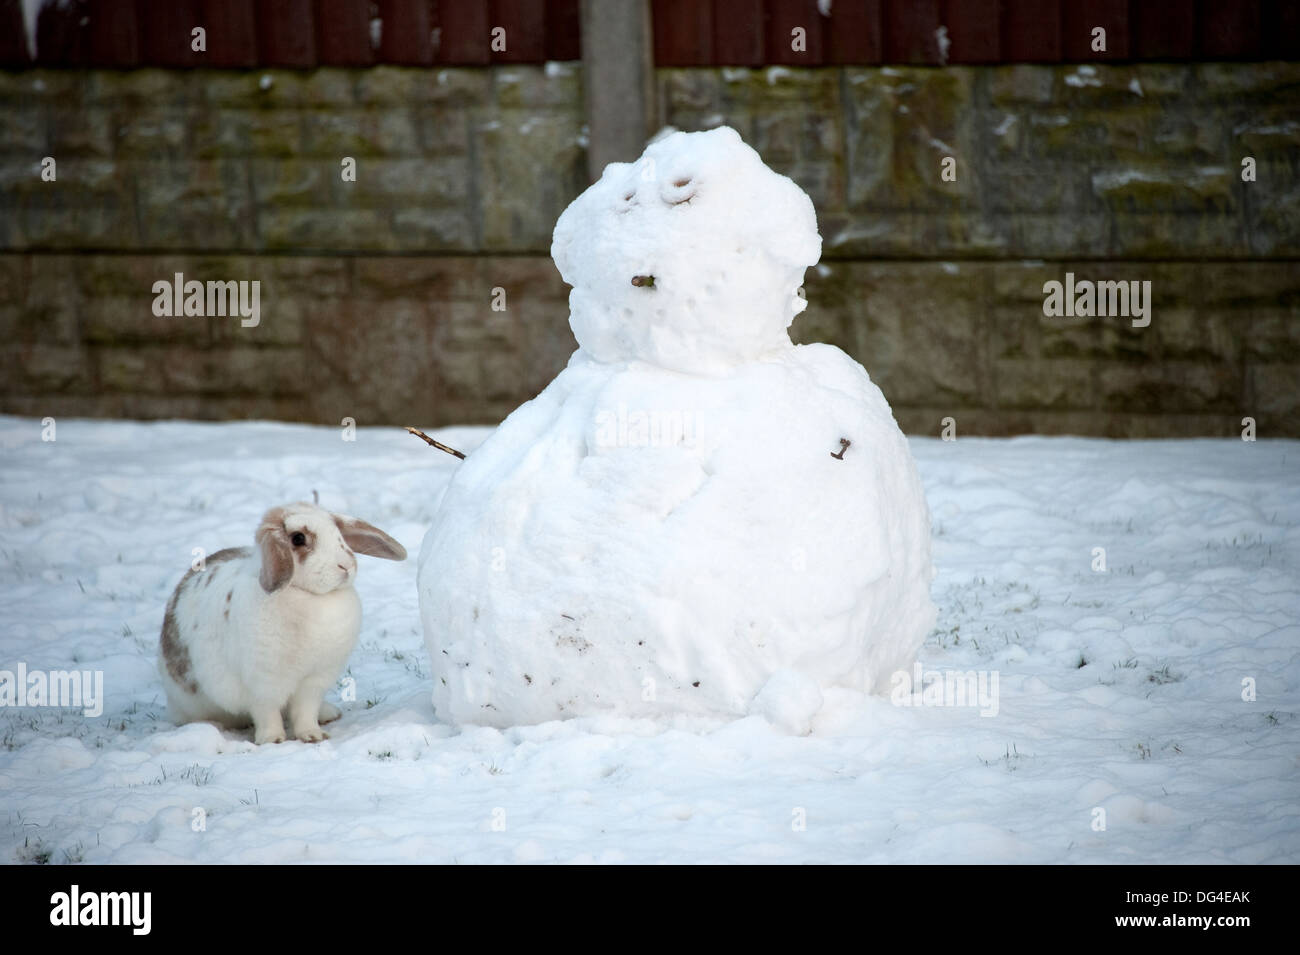 Lop eared weiße Kaninchen im Winter Schneemann bauen Stockfoto